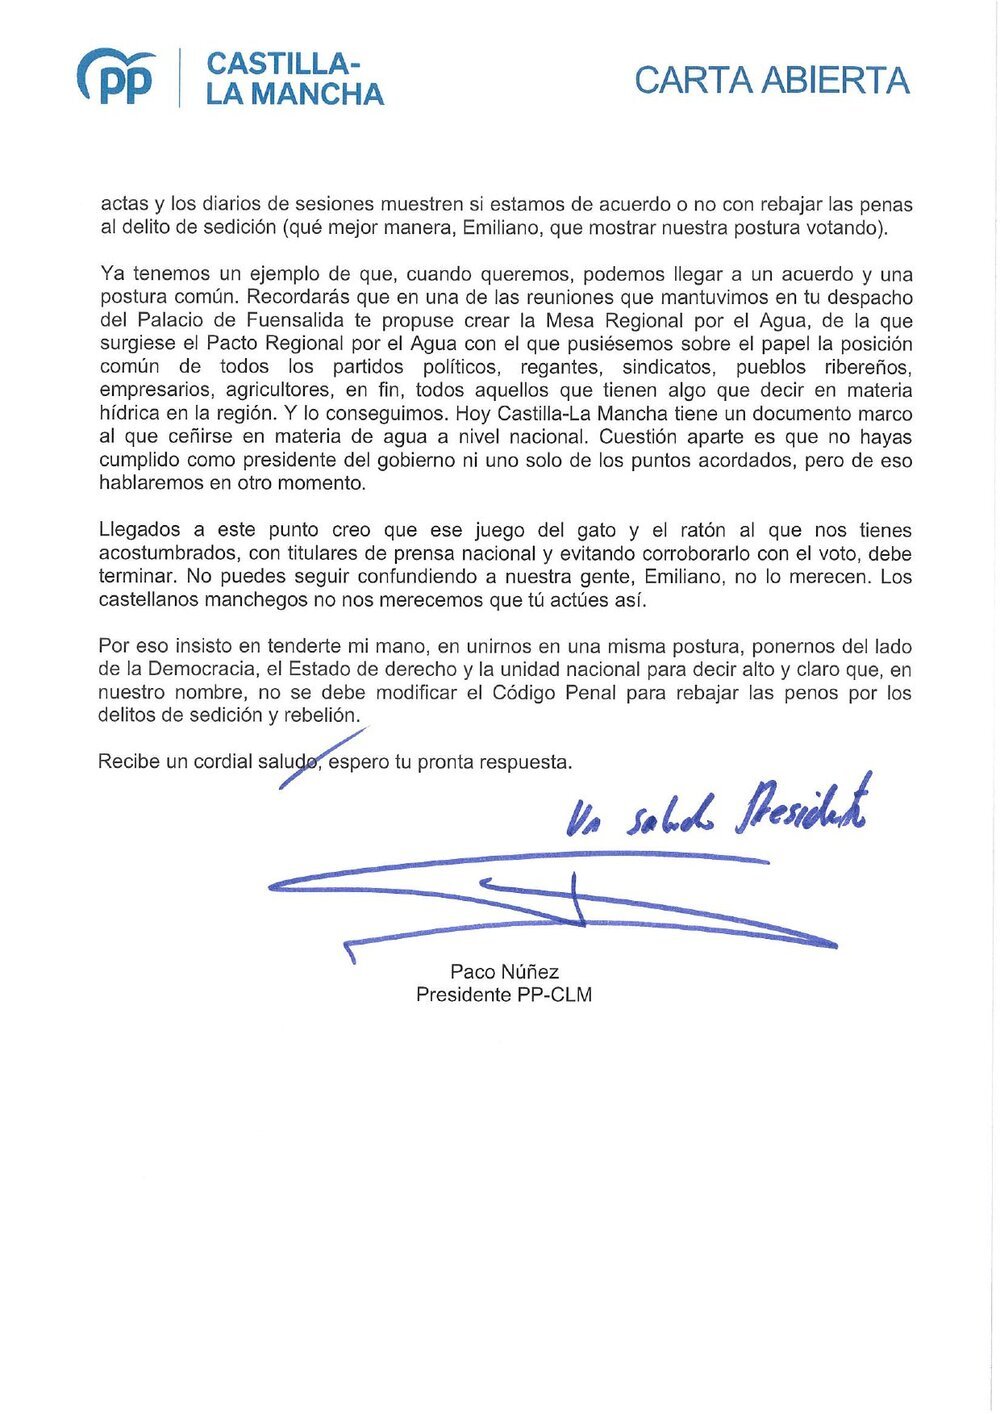 Carta abierta enviada por Paco Núñez a Emiliano García-Page